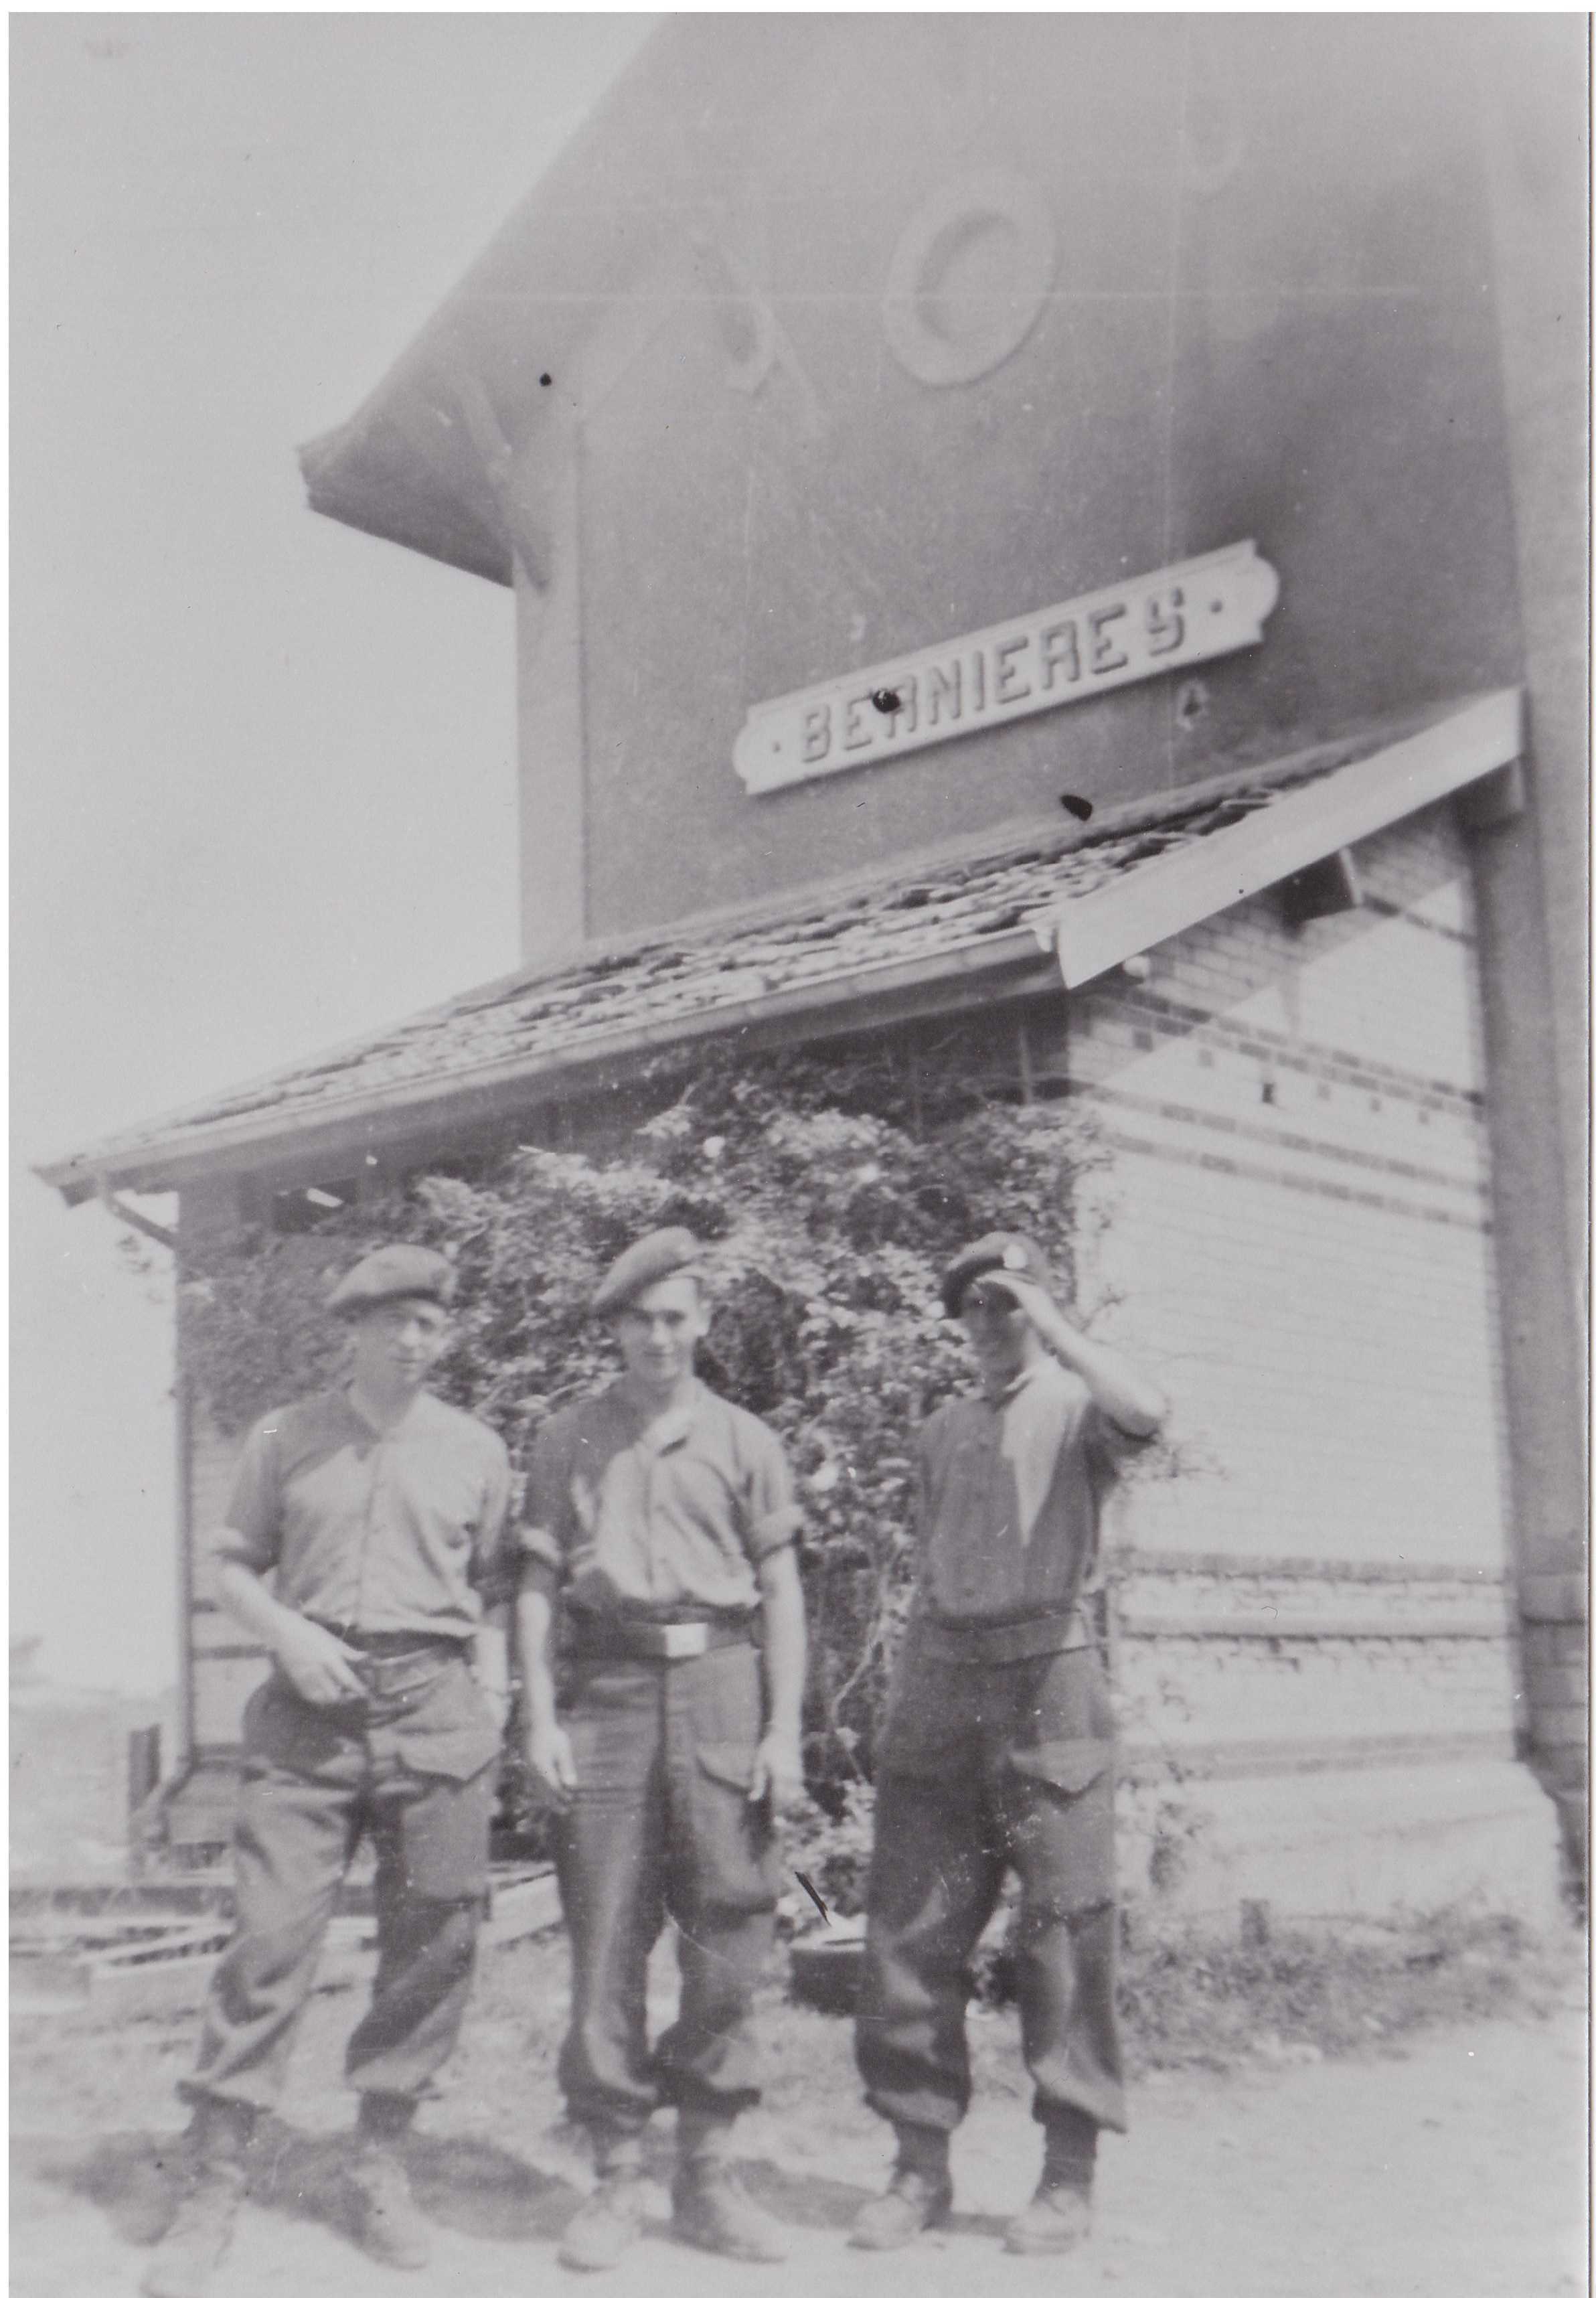 Photographie en noir et blanc – Trois Canadiens dans une tenue militaire décontractée, debout en face d’un grand bâtiment indiquant « Bernières ». L’un a abaissé sa casquette pour se protéger contre le soleil.